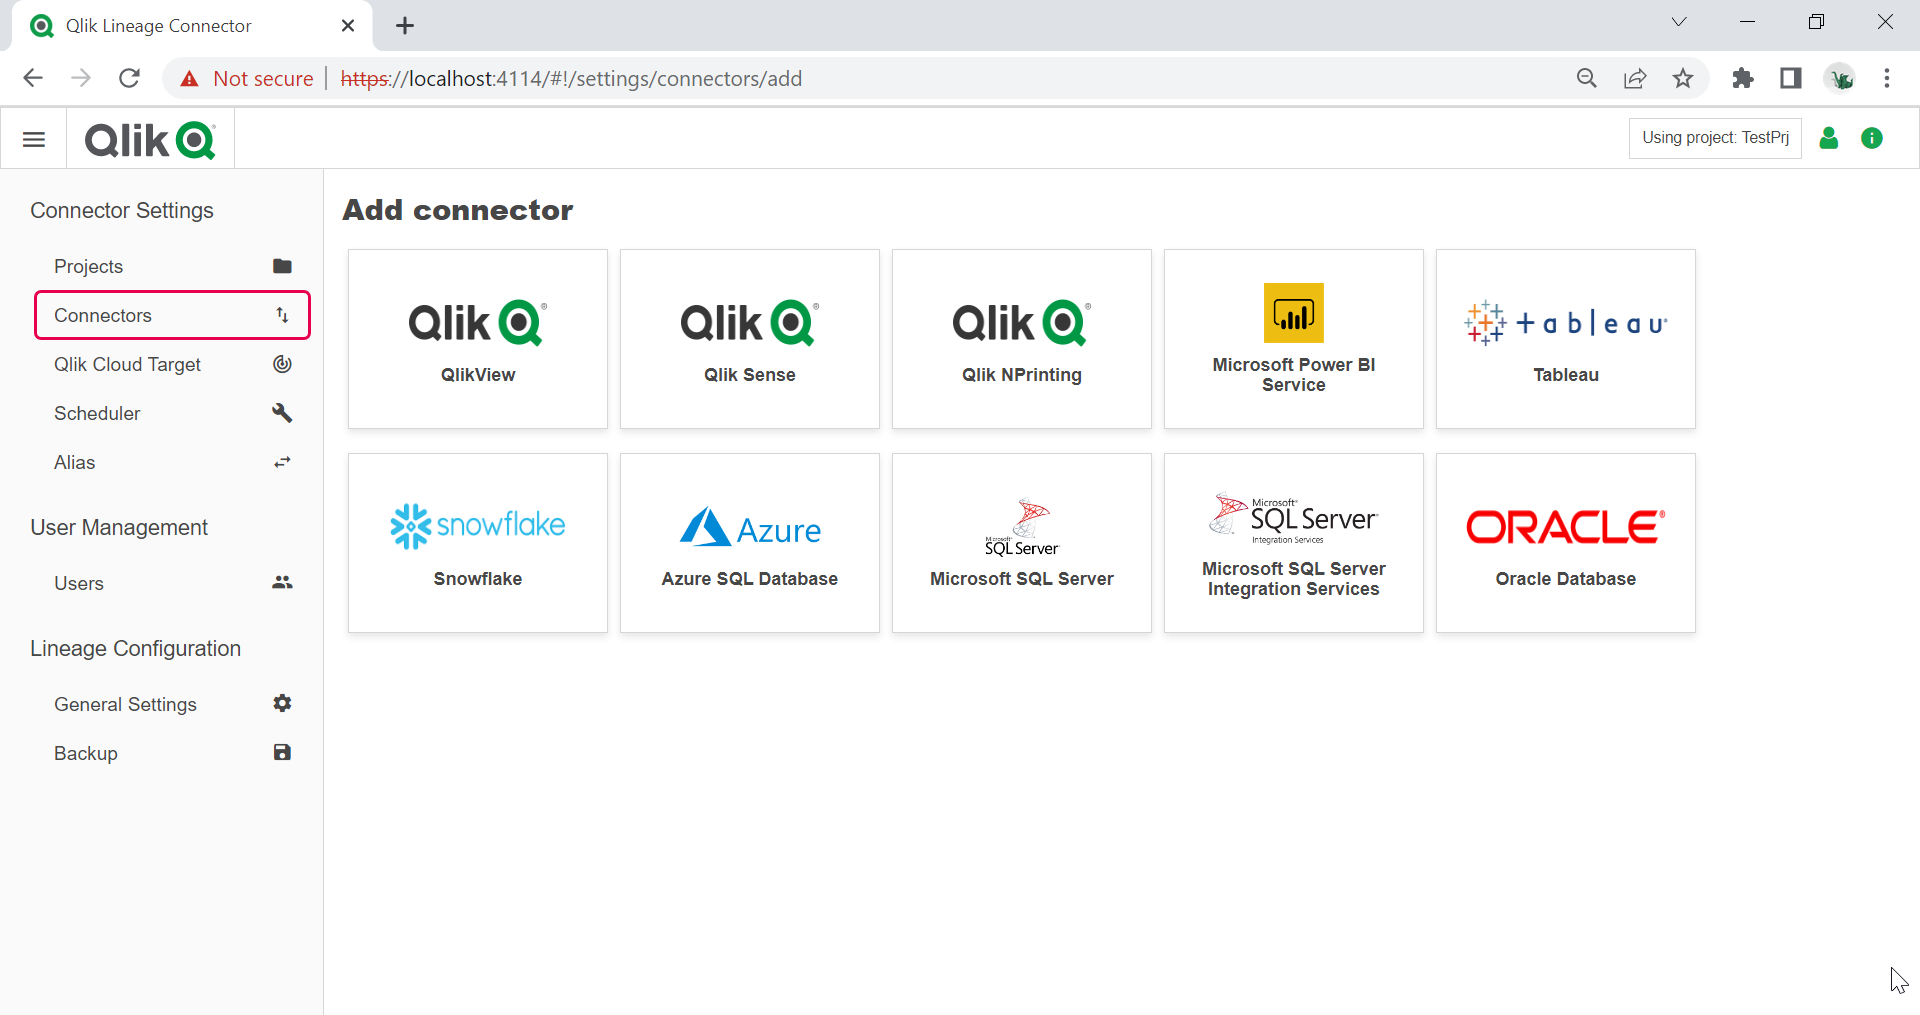 Qlik Lineage Connector BI 工具和資料來源